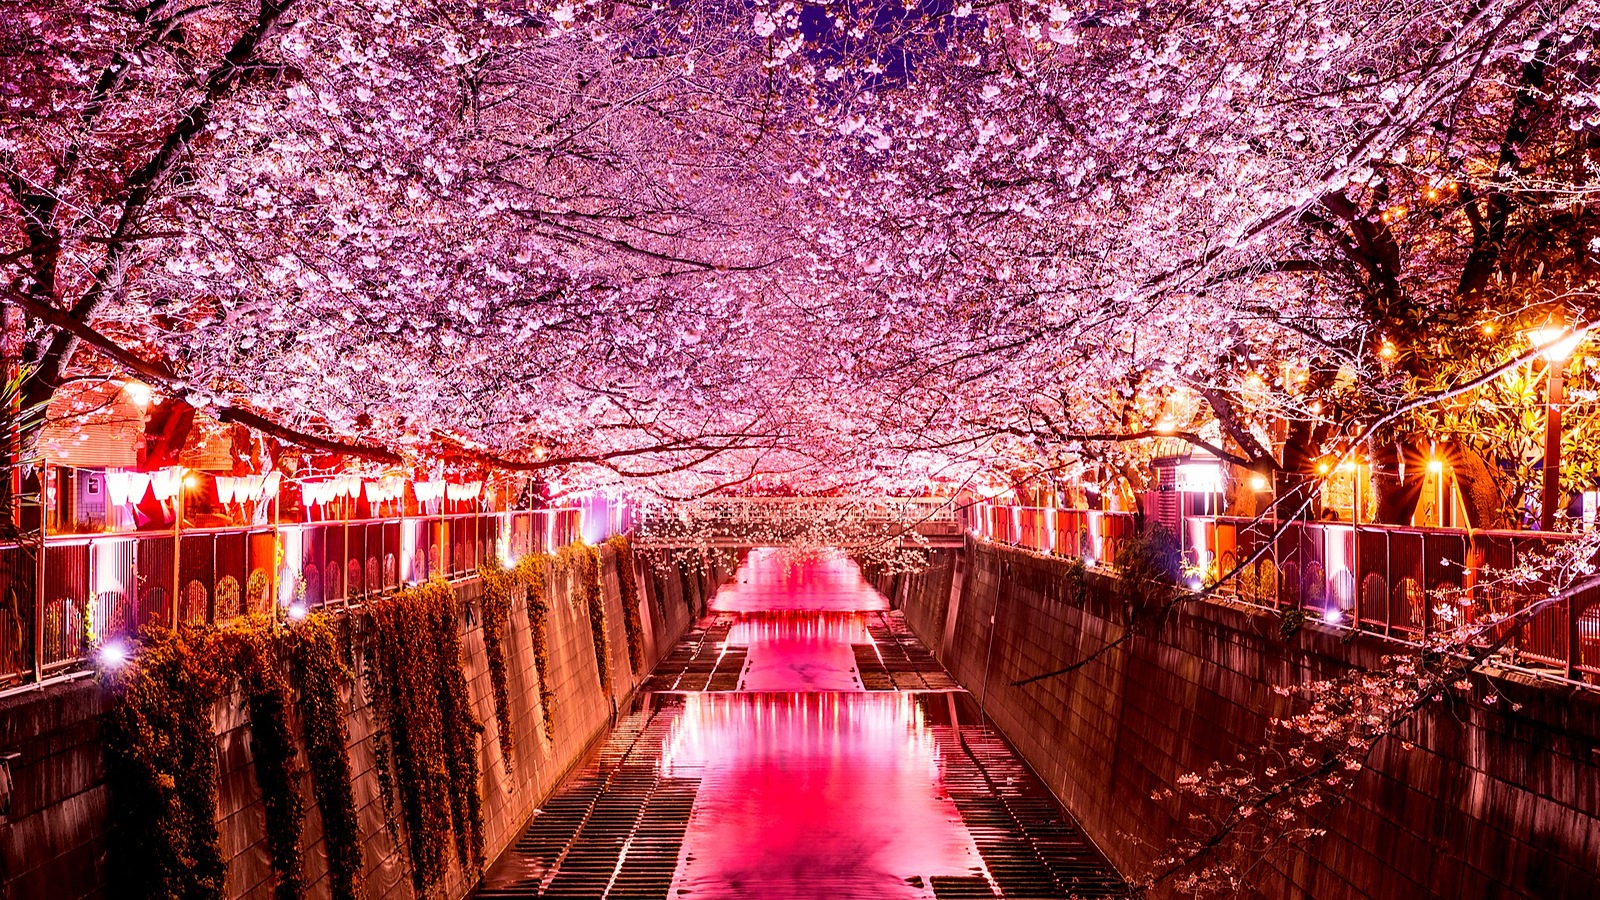 目黒川の夜桜を見に行こう🌸✨